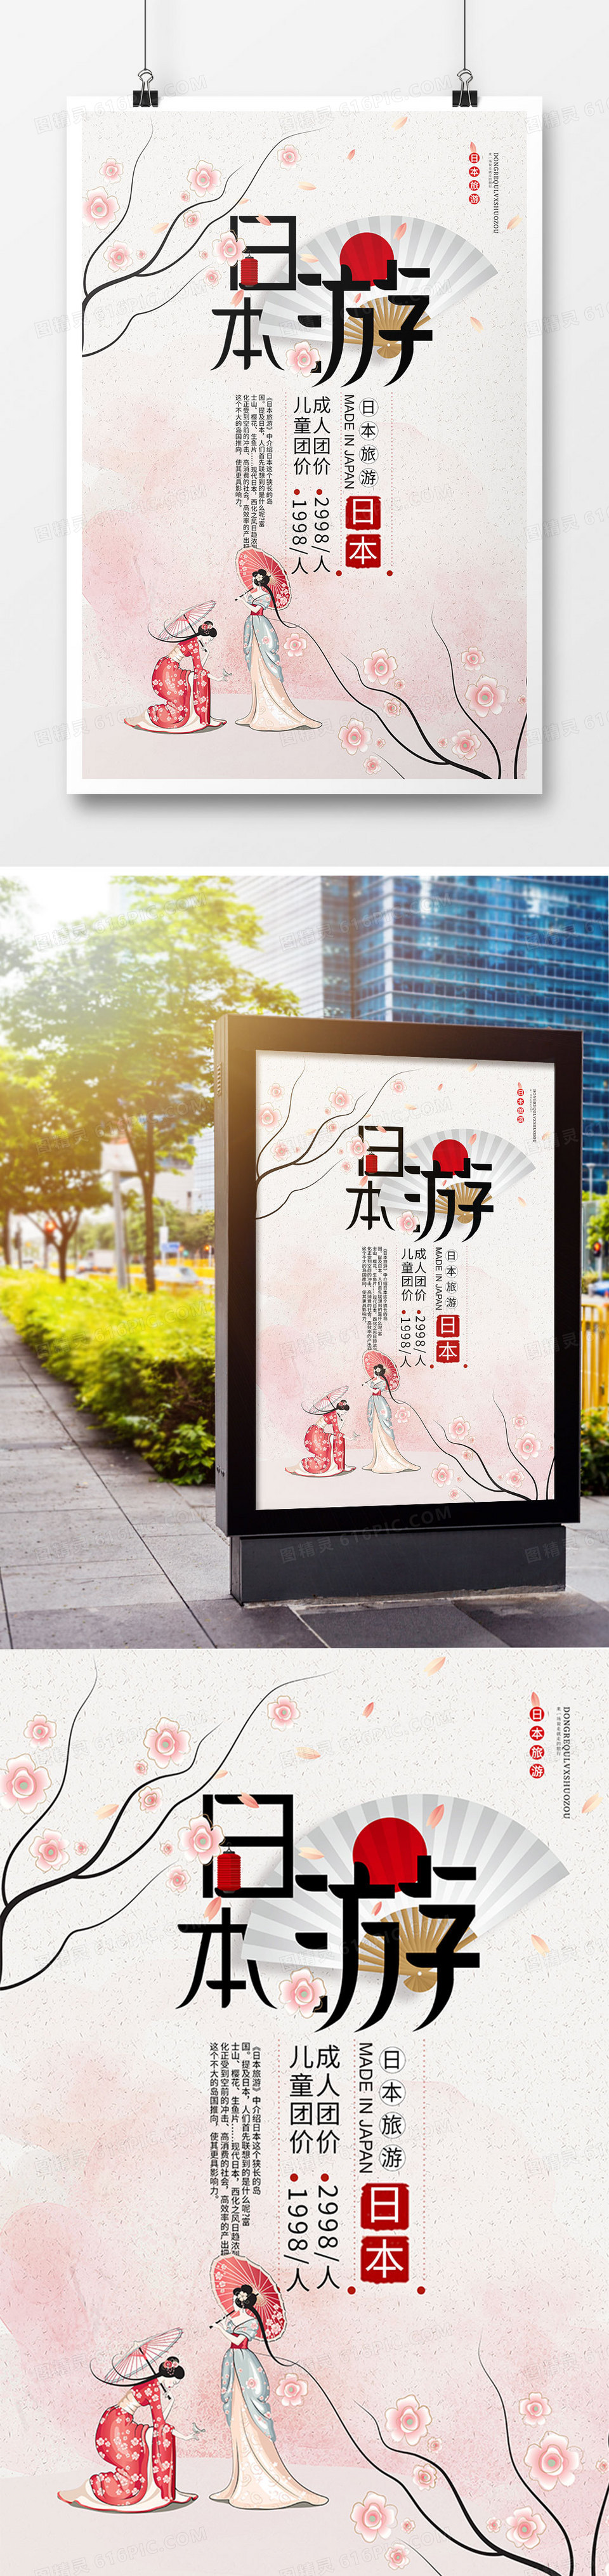 简约日式旅游促销海报